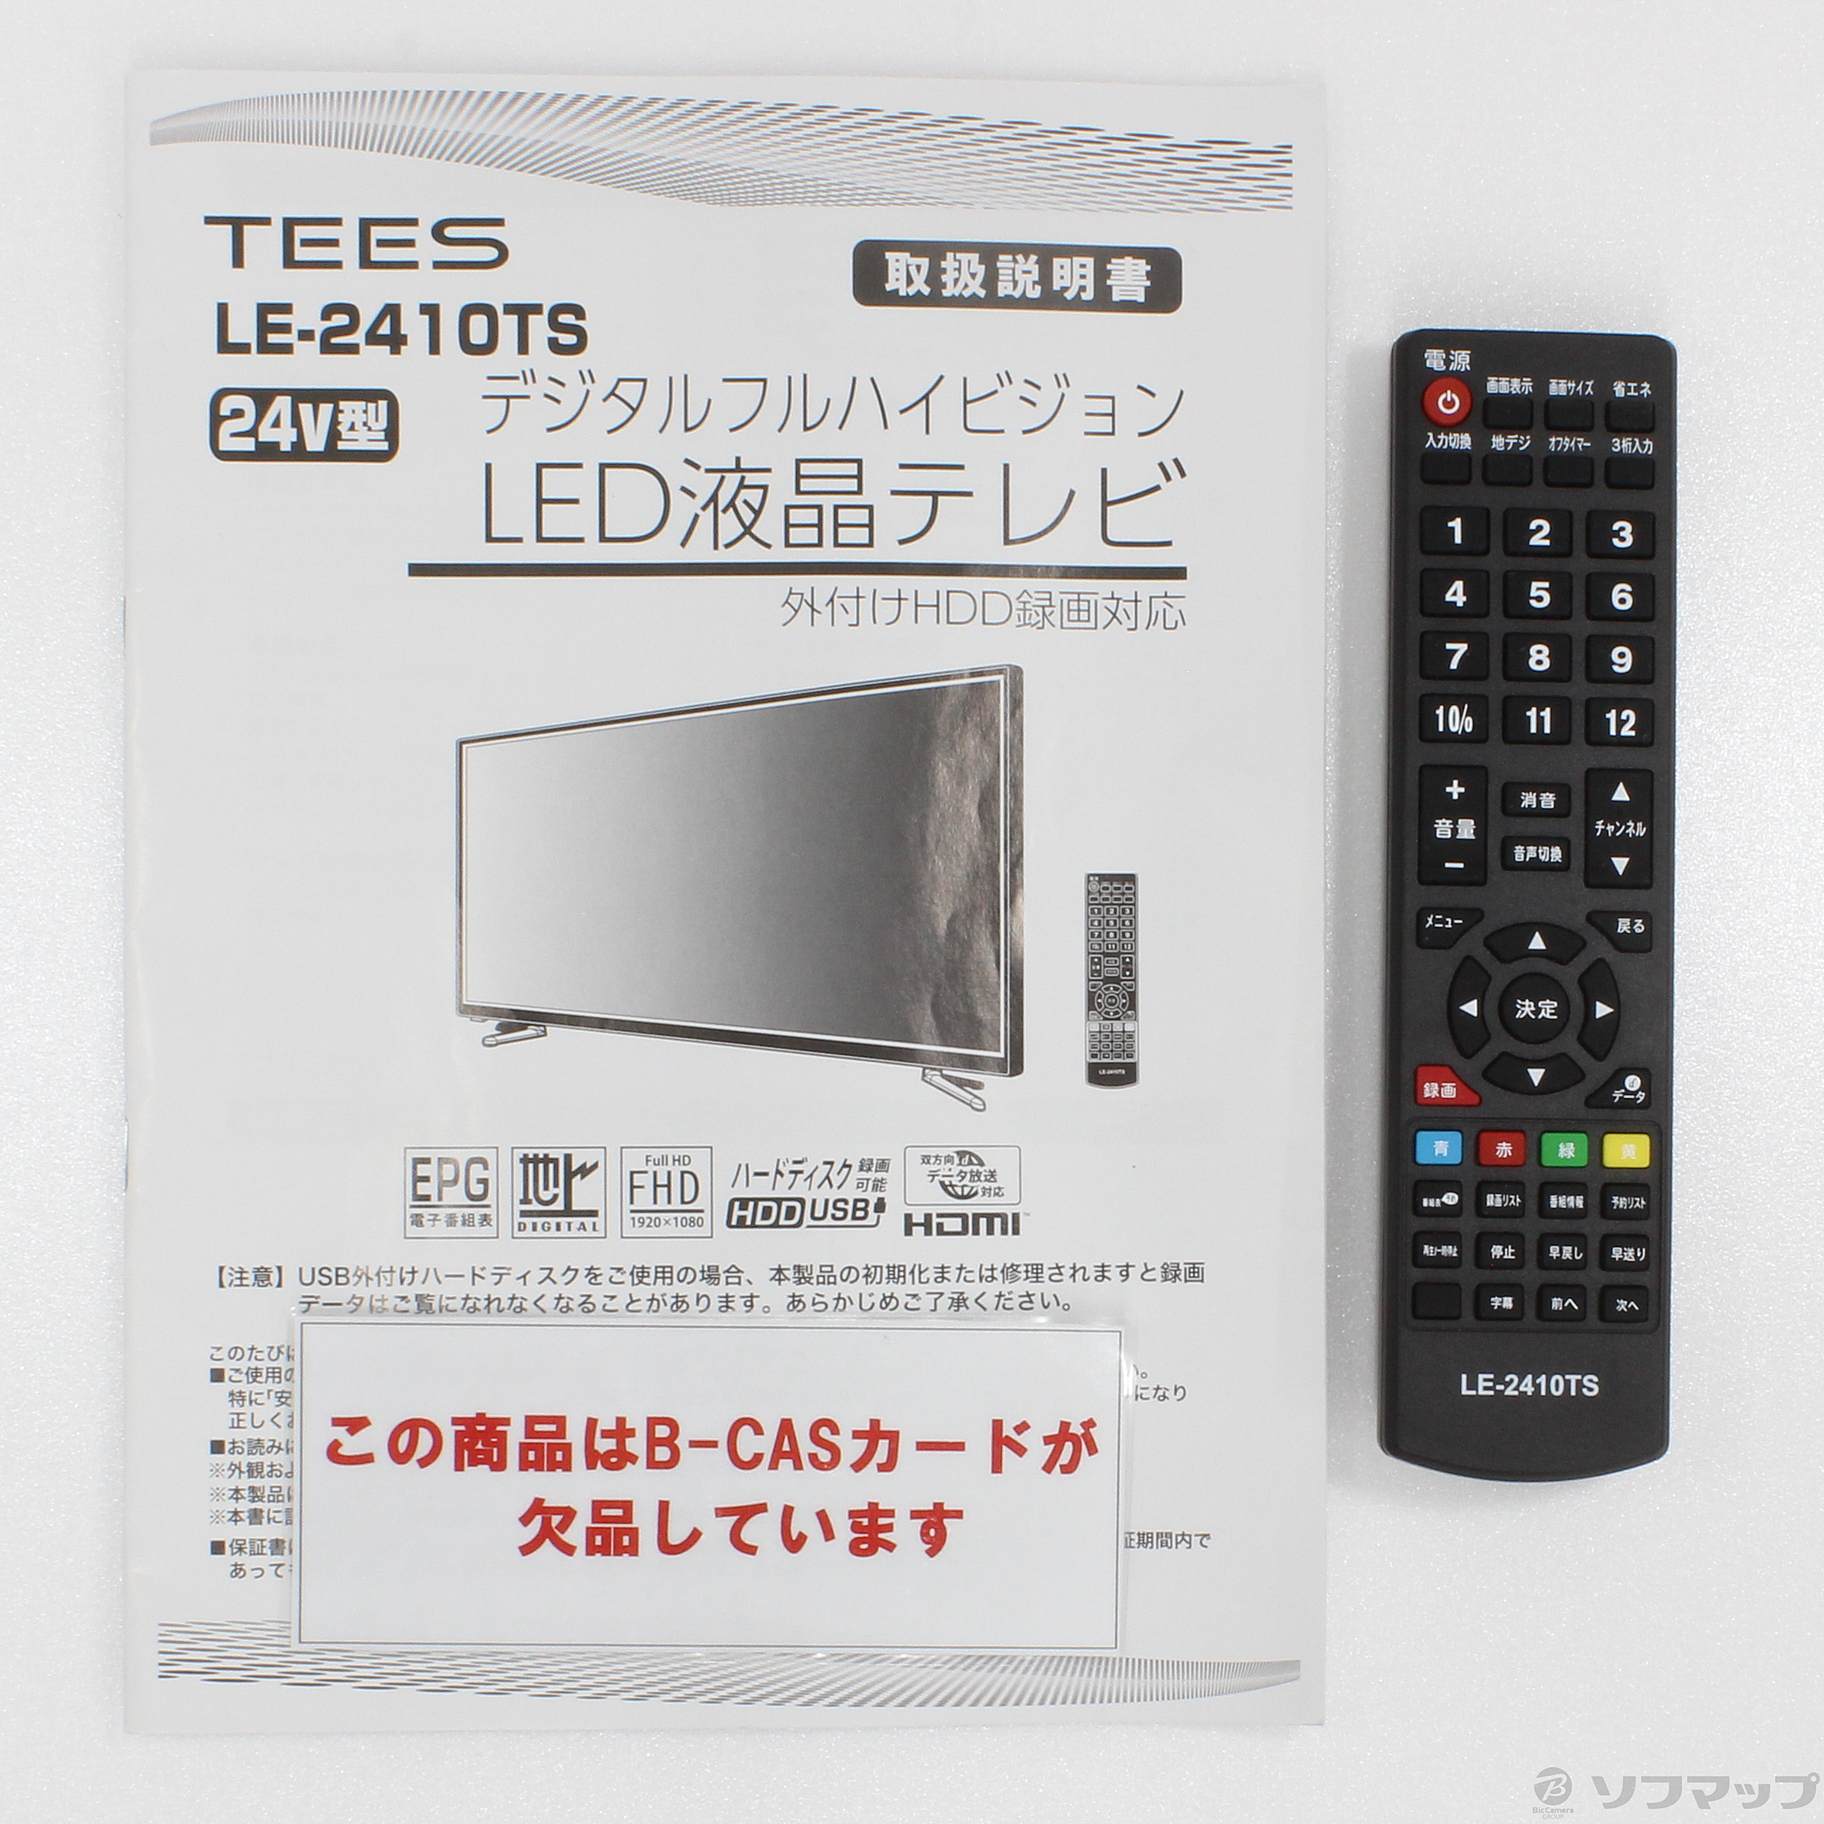 TEES LE-2410TS - テレビ